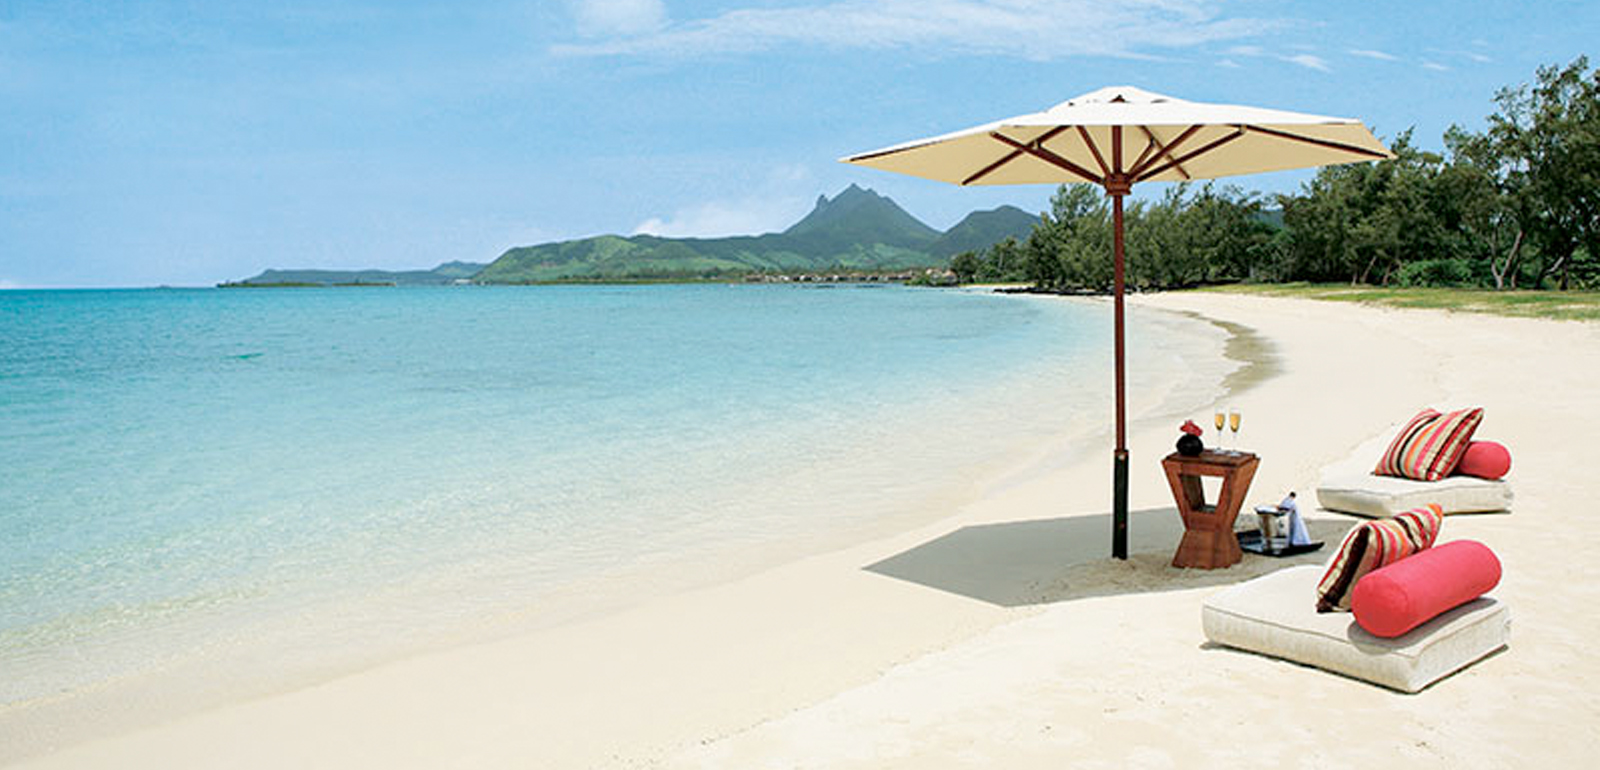 Mauritius - Anahita the Resort - Header